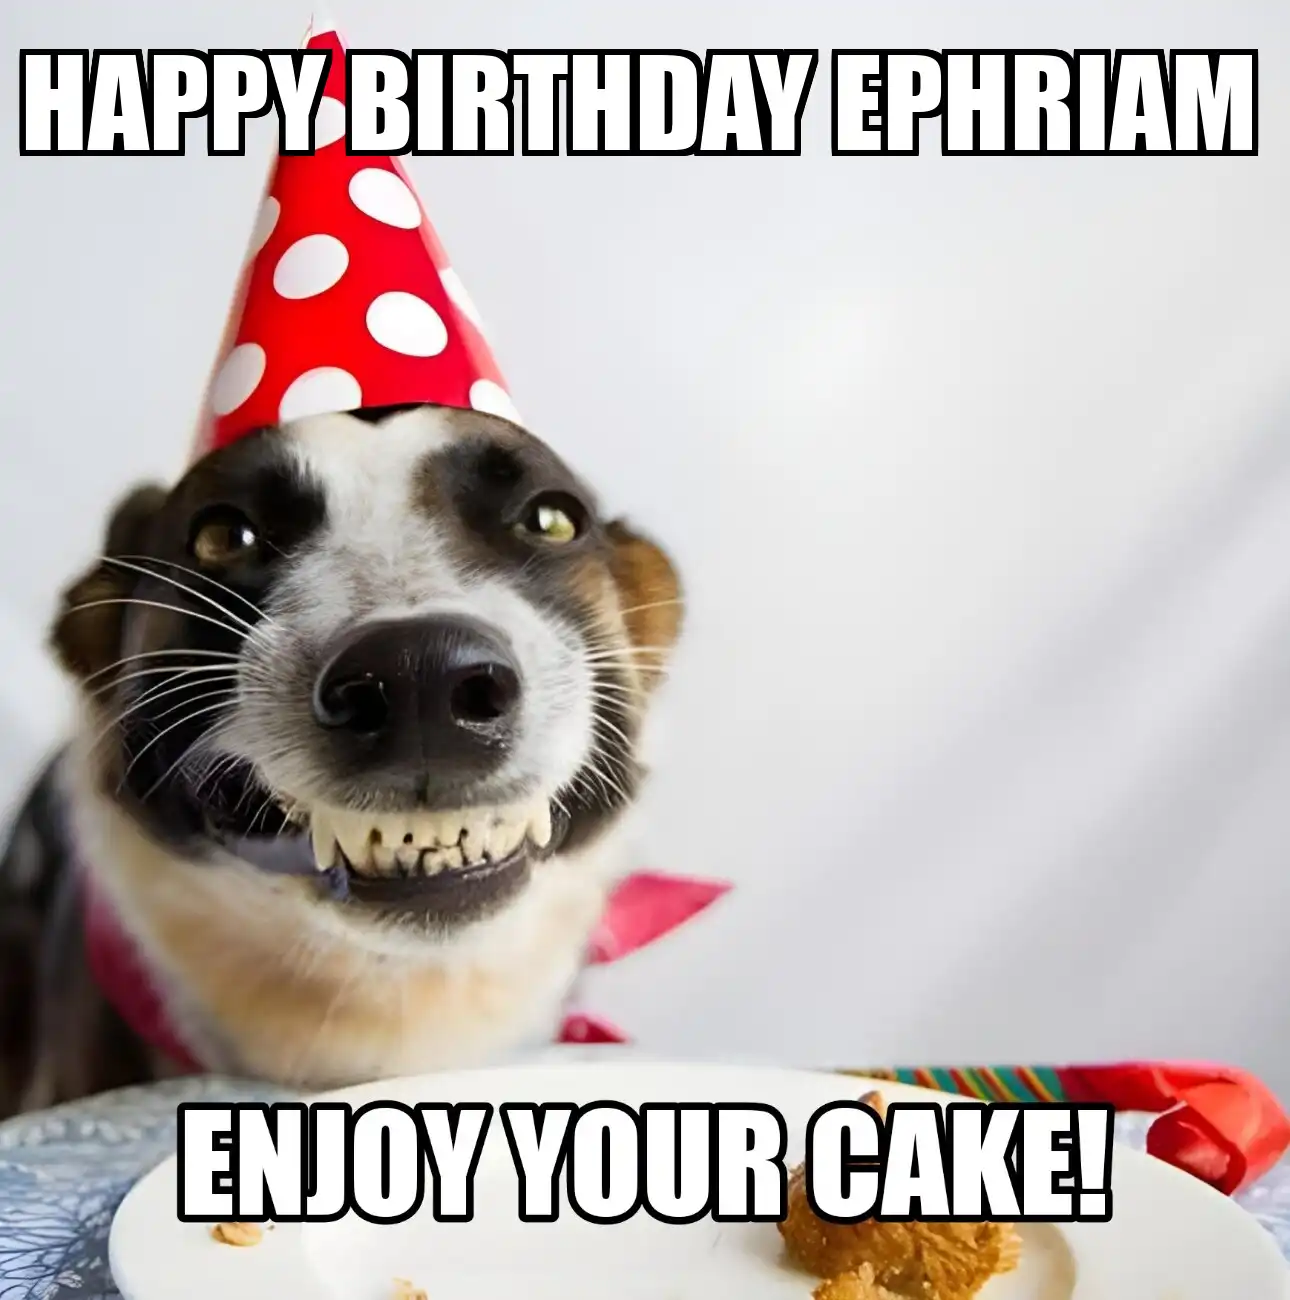 Happy Birthday Ephriam Enjoy Your Cake Dog Meme